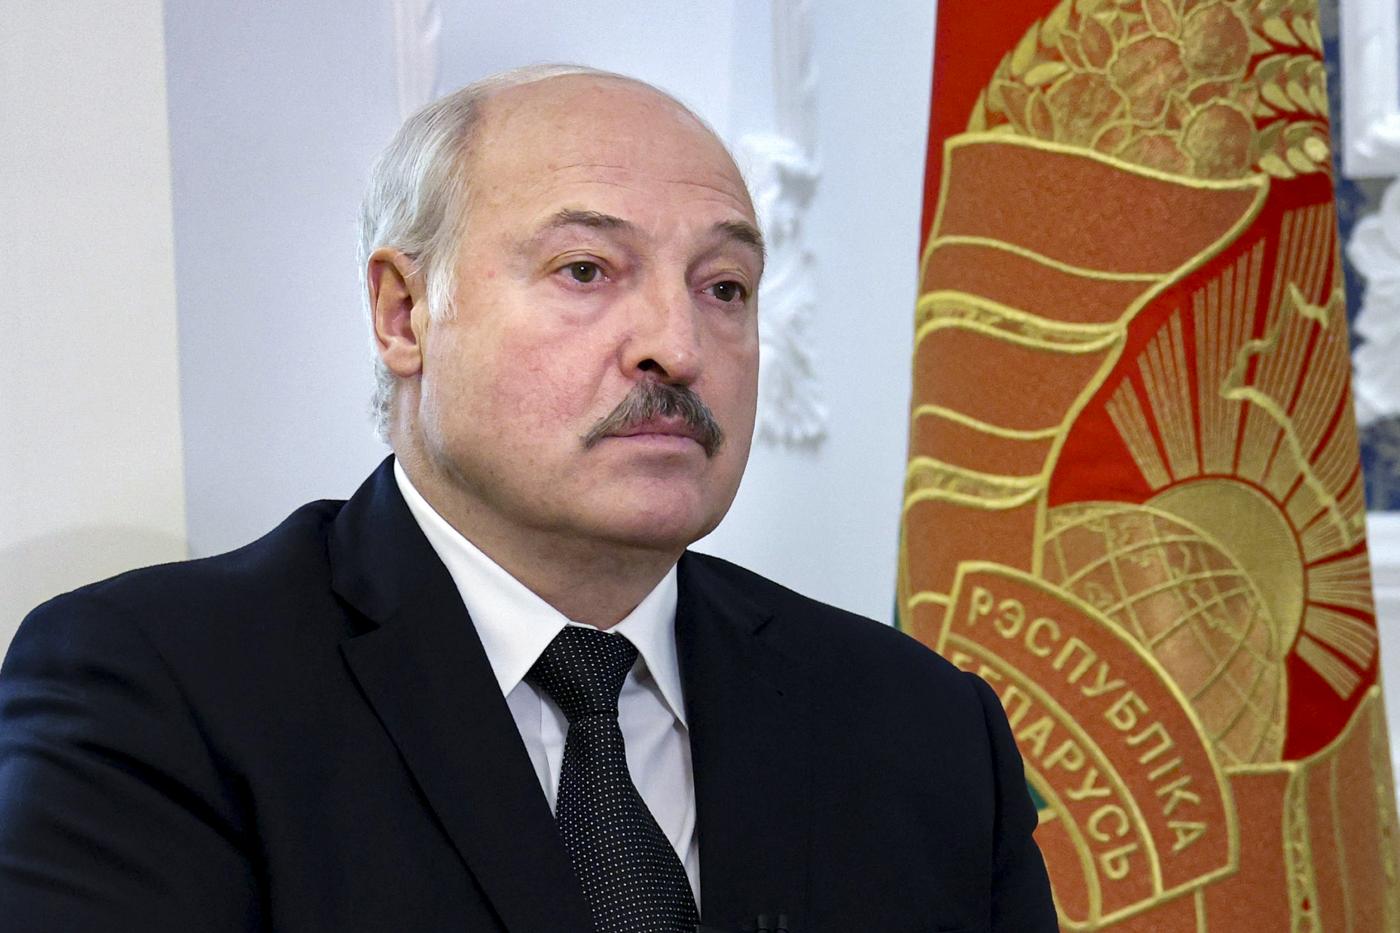 Lukashenko dice che la controffensiva ucraina è solo disinformazione